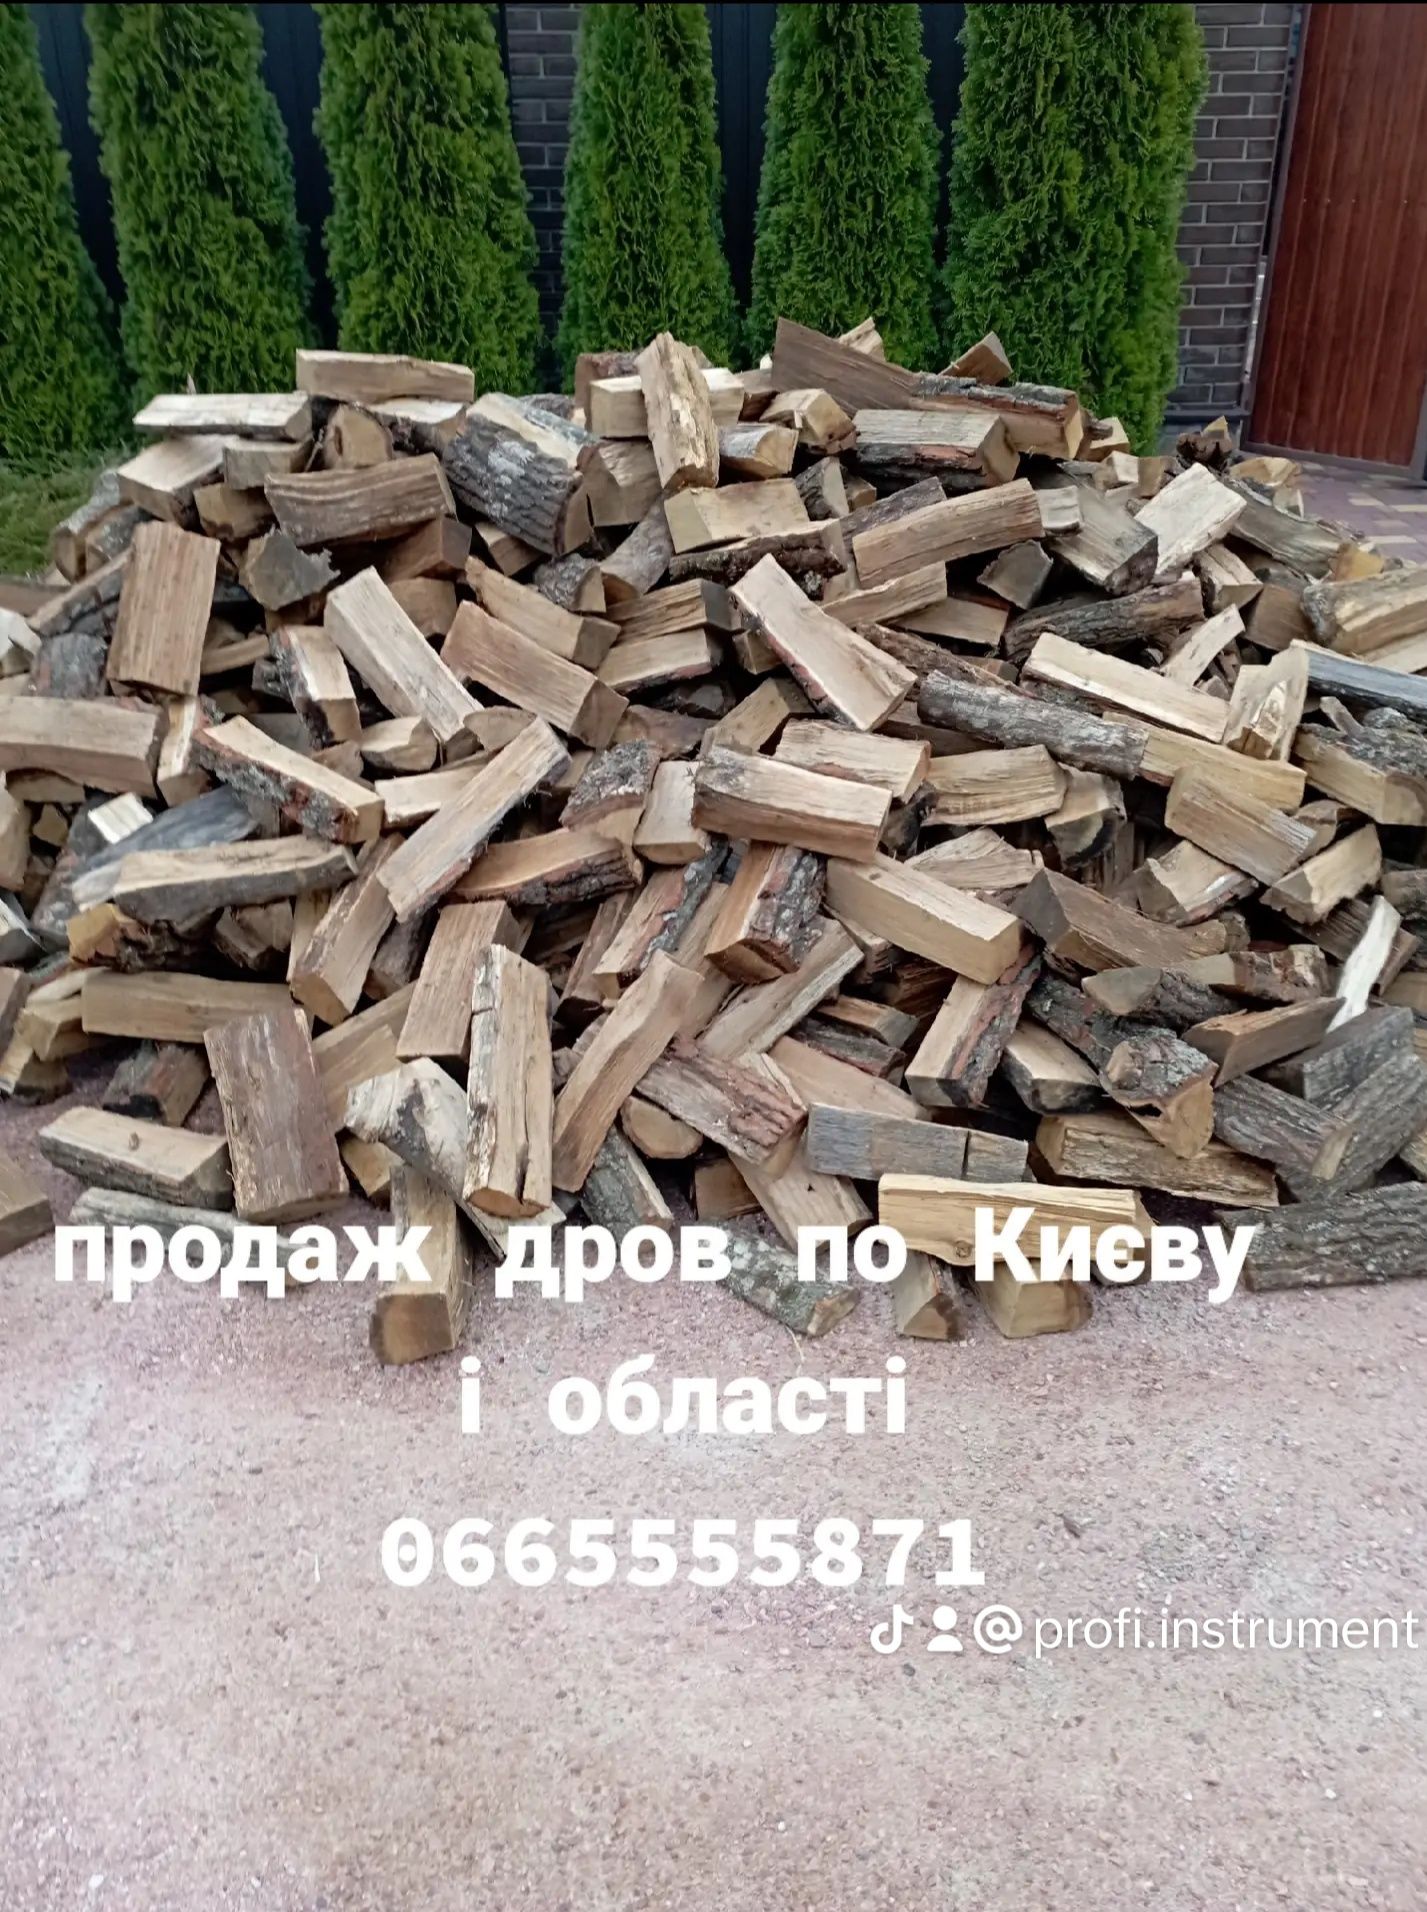 Продаж дров по Київській області